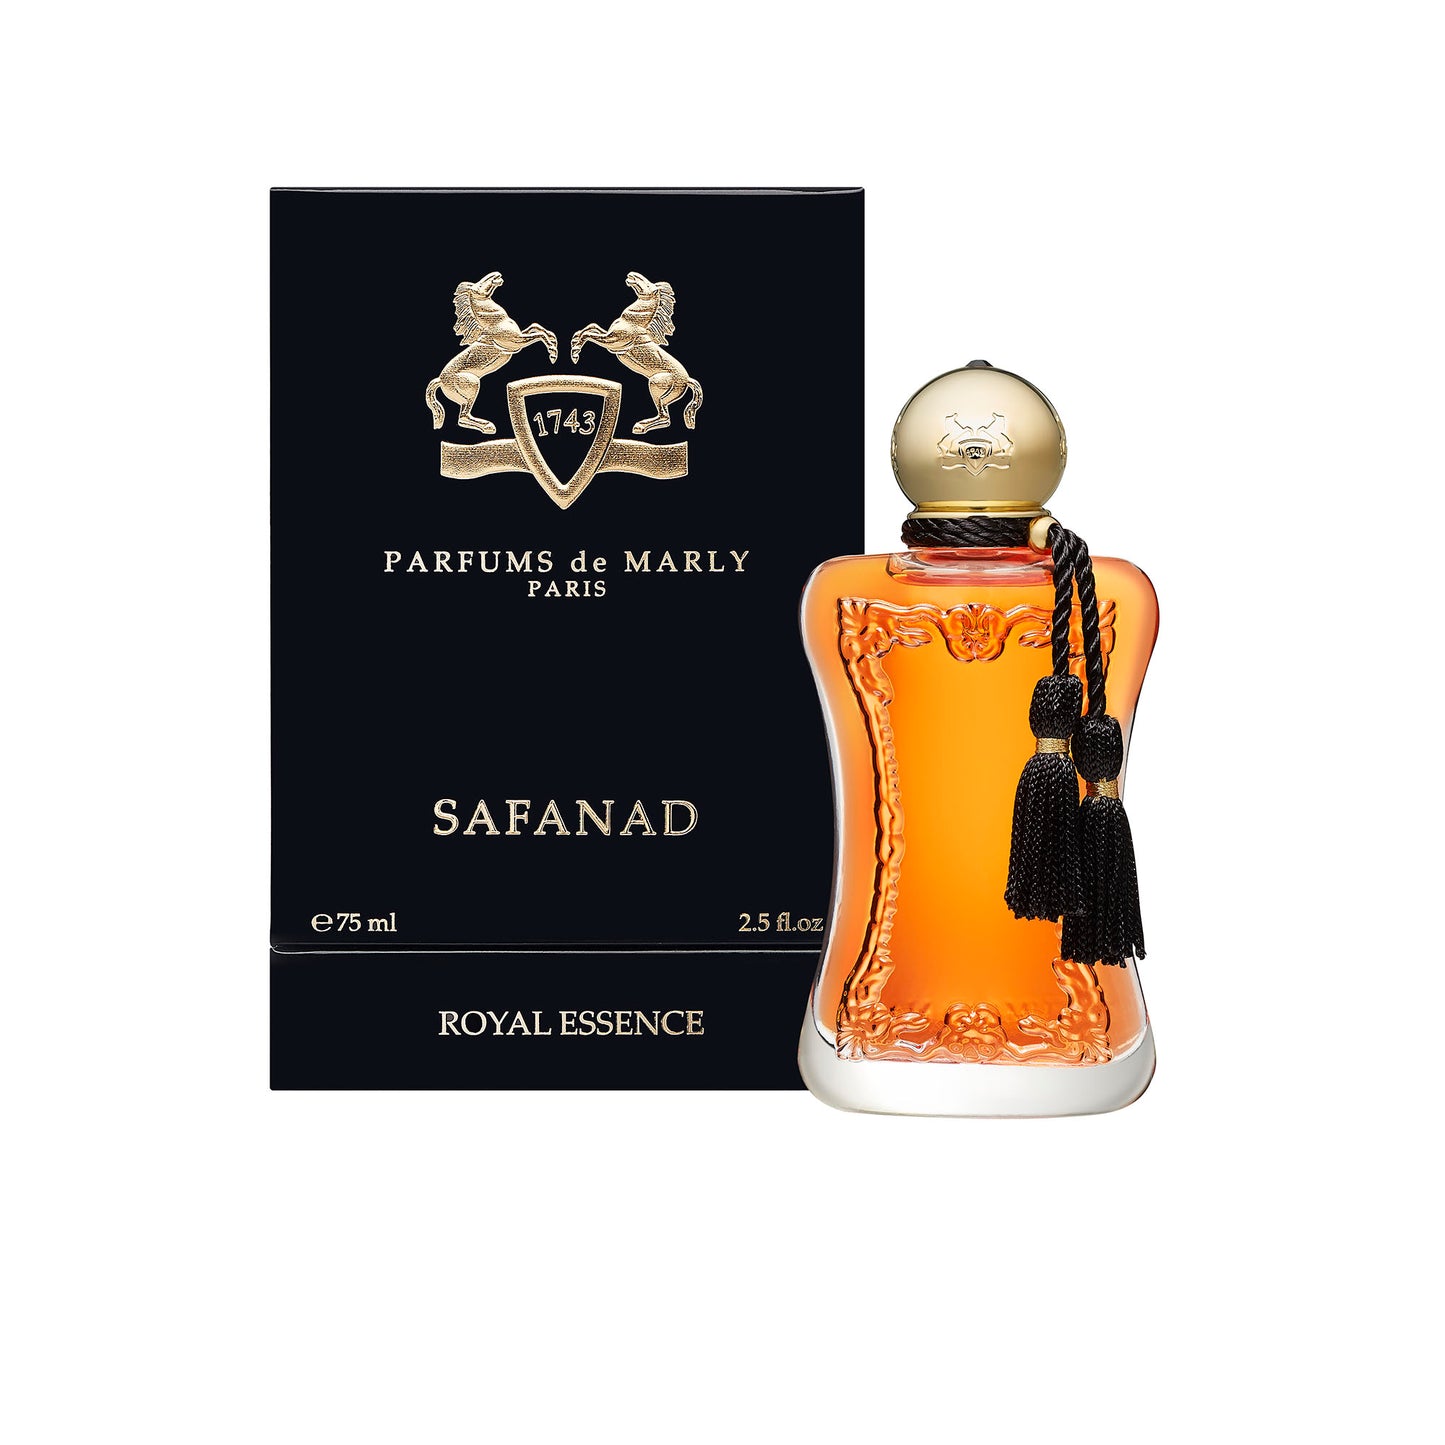 SAFANAD 2.5 oz Eau de Parfum